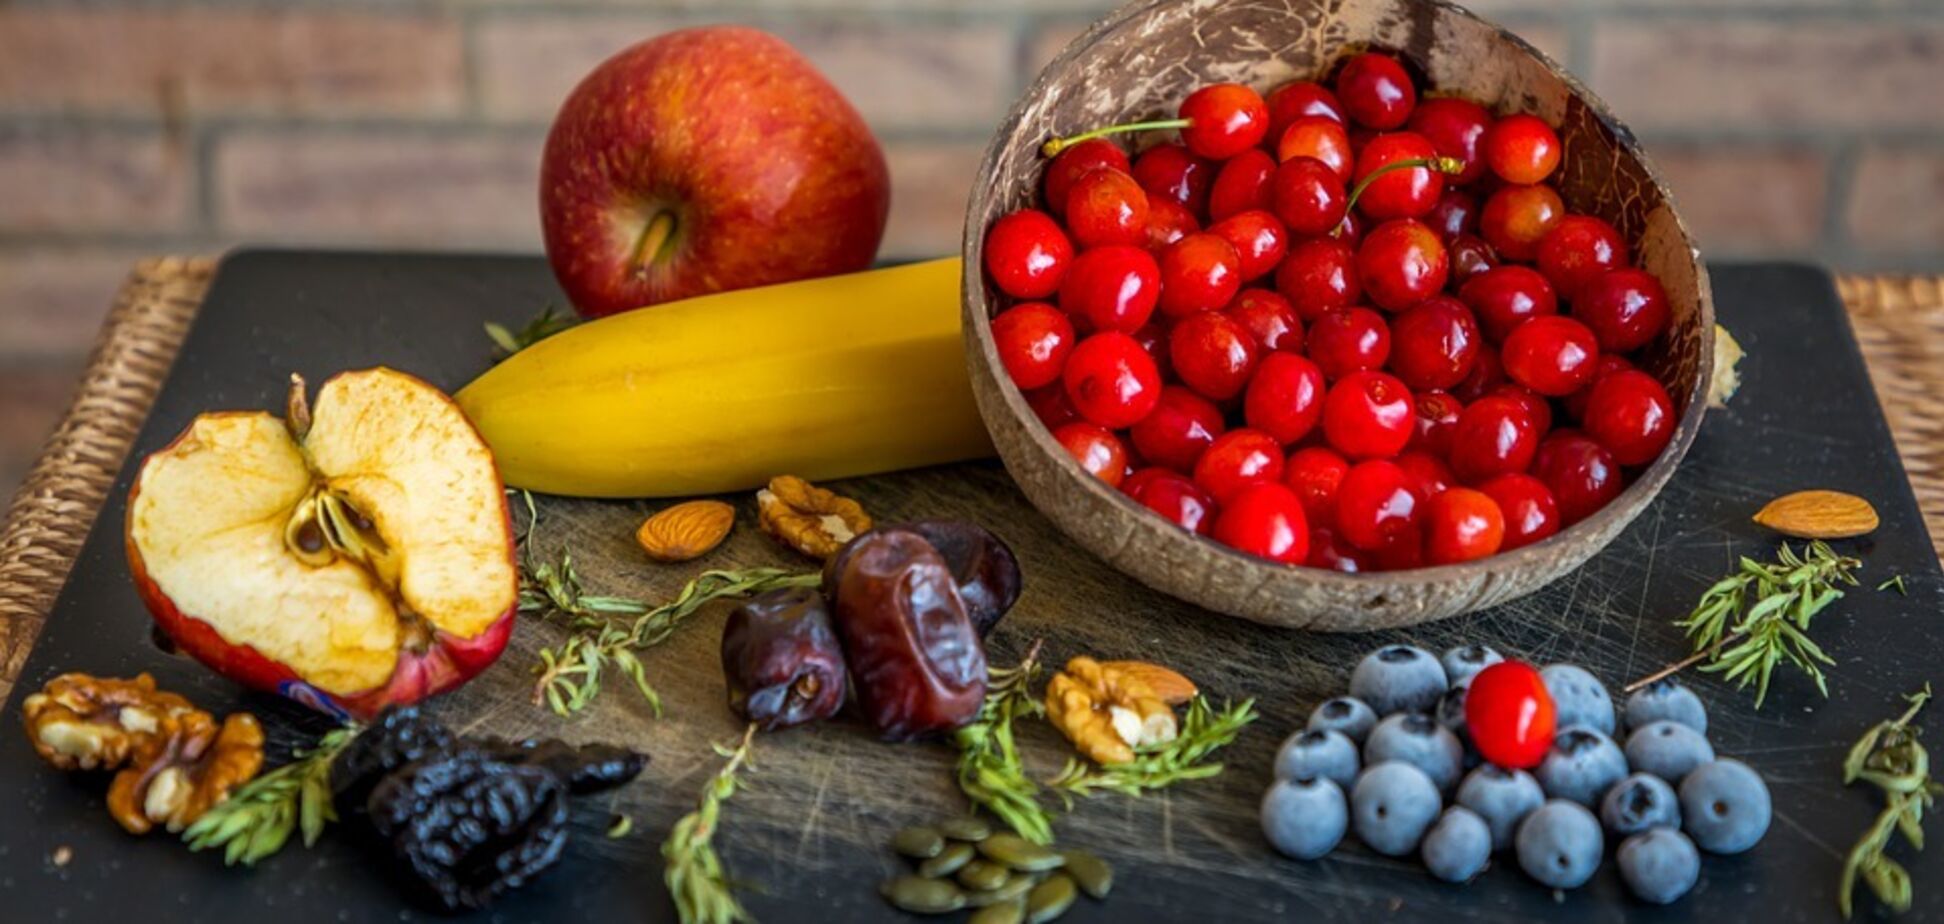 Флавонолы, содержащиеся в чае, ягодах и яблоках, могут снижать кровяное давление